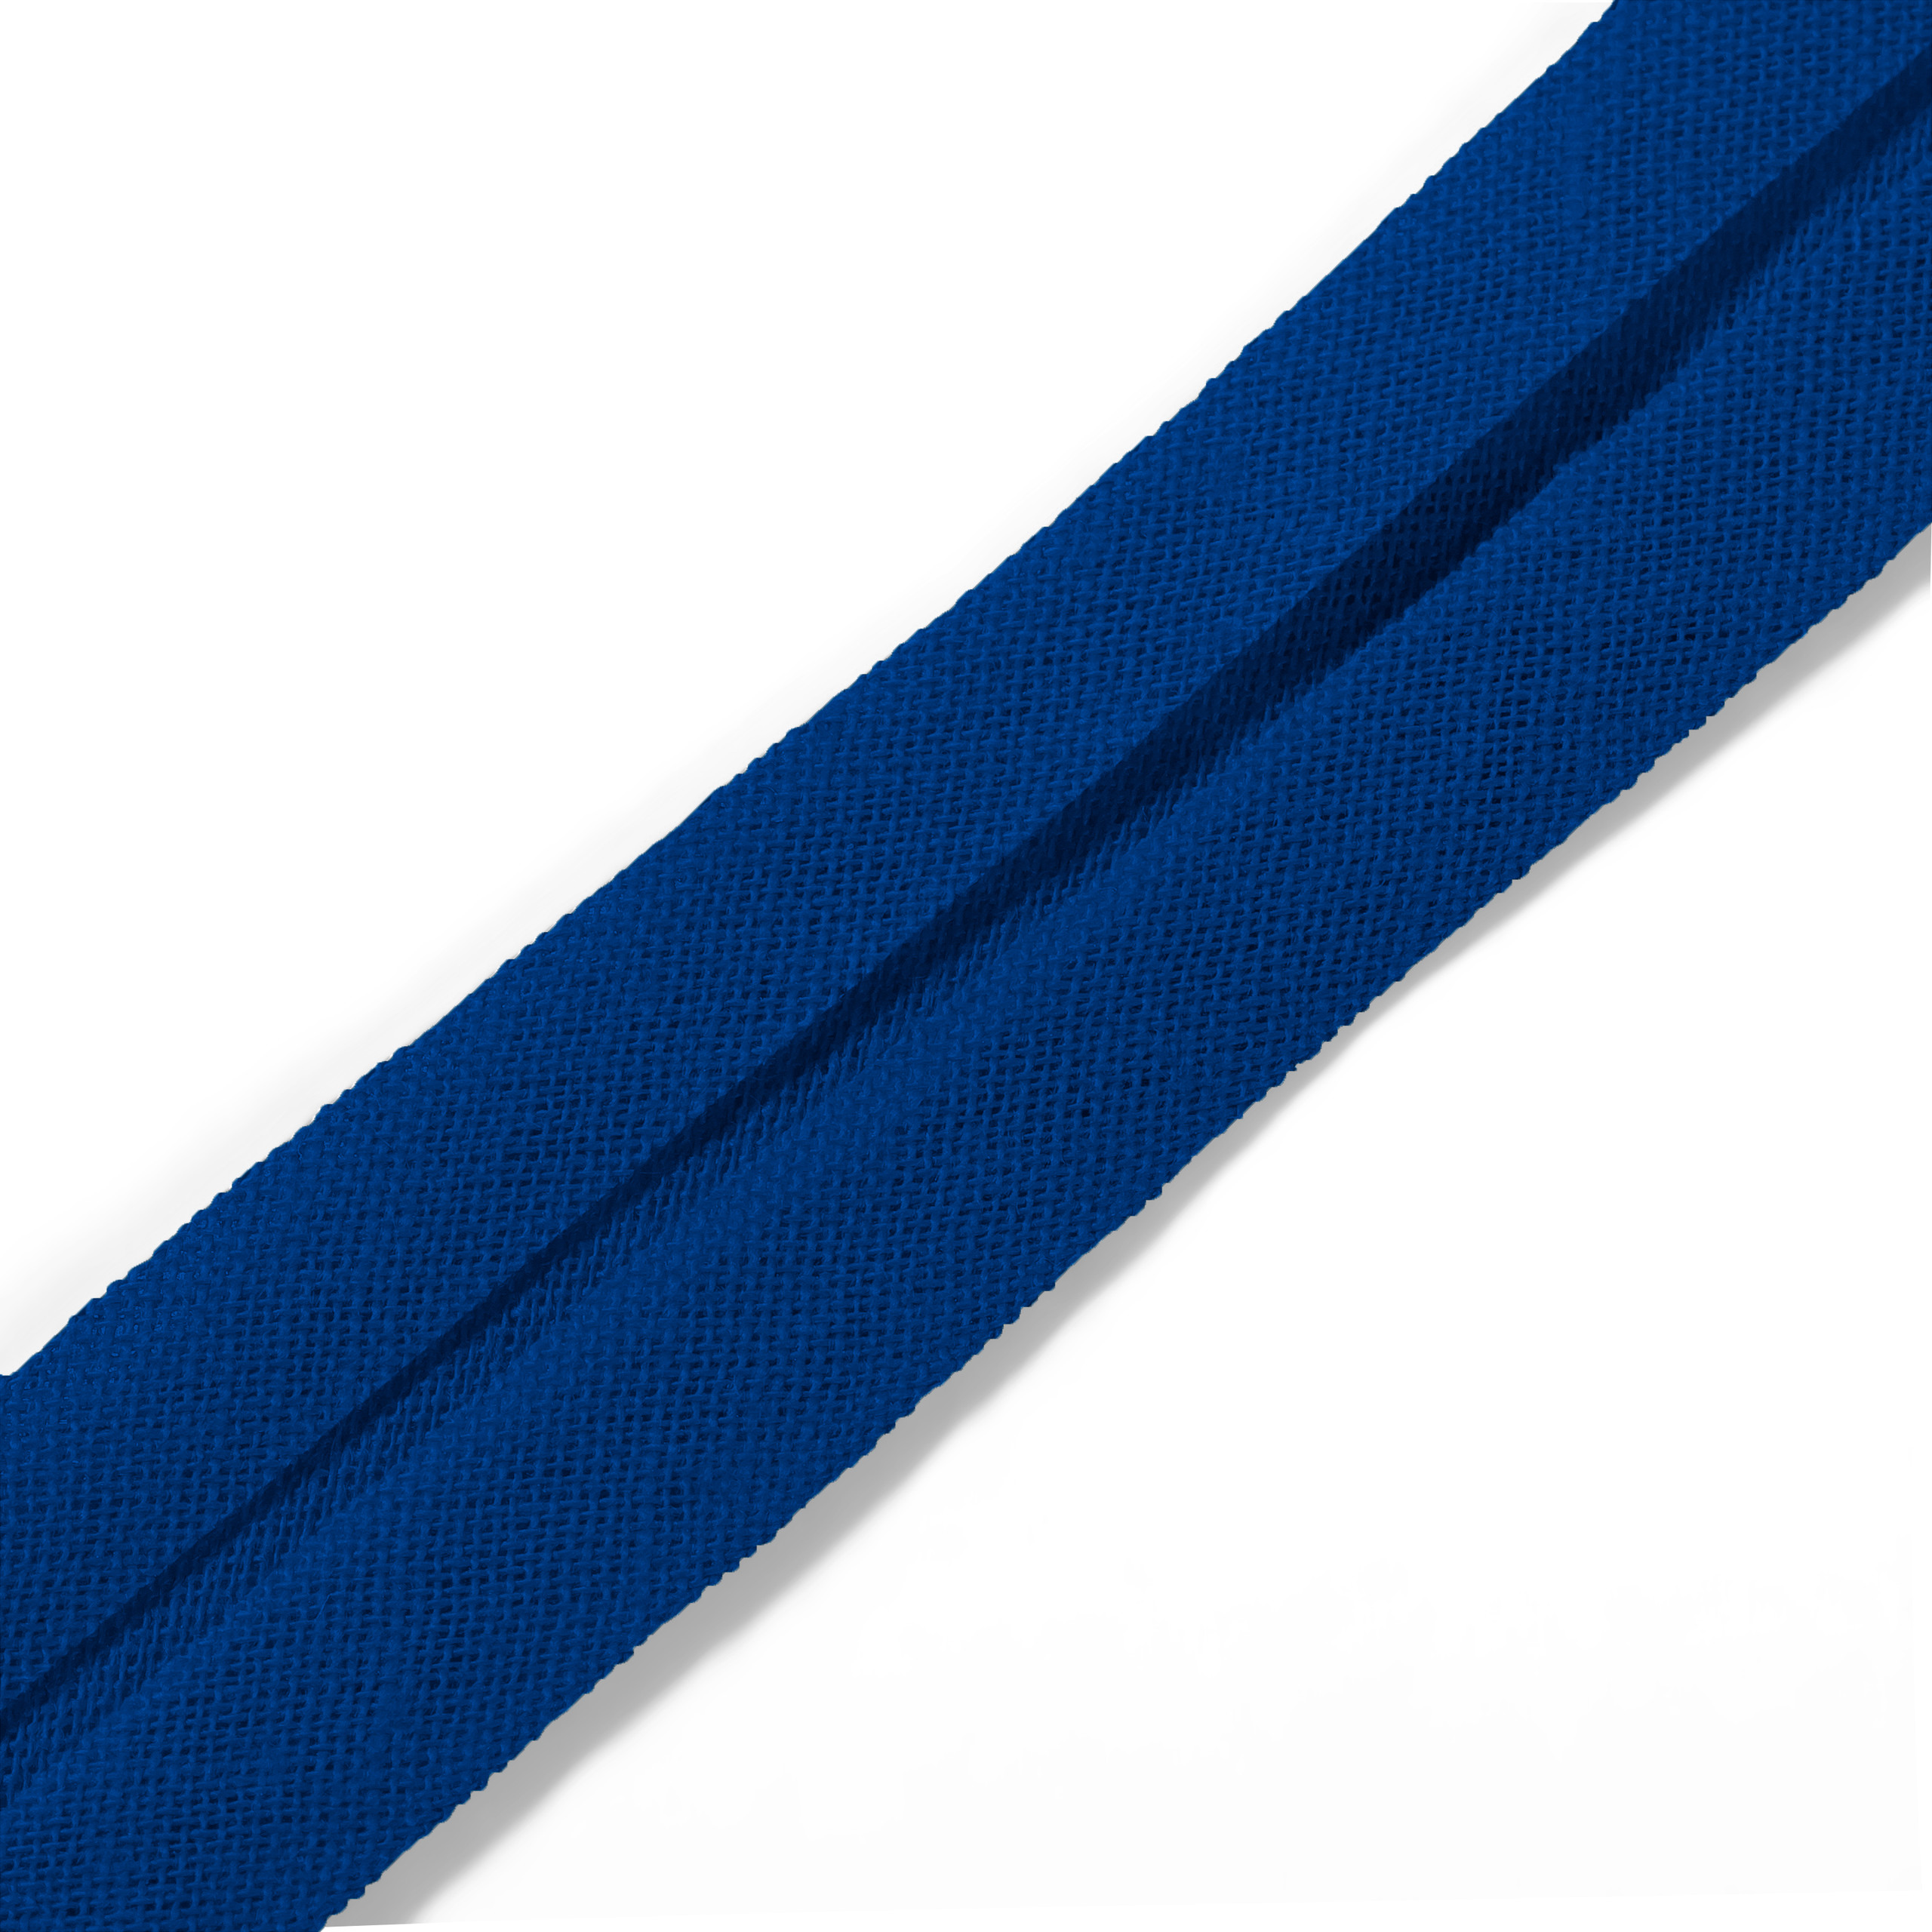 Schrägband 40/20 mm blau, Meterware, Baumwolle, Prym, Einfassband